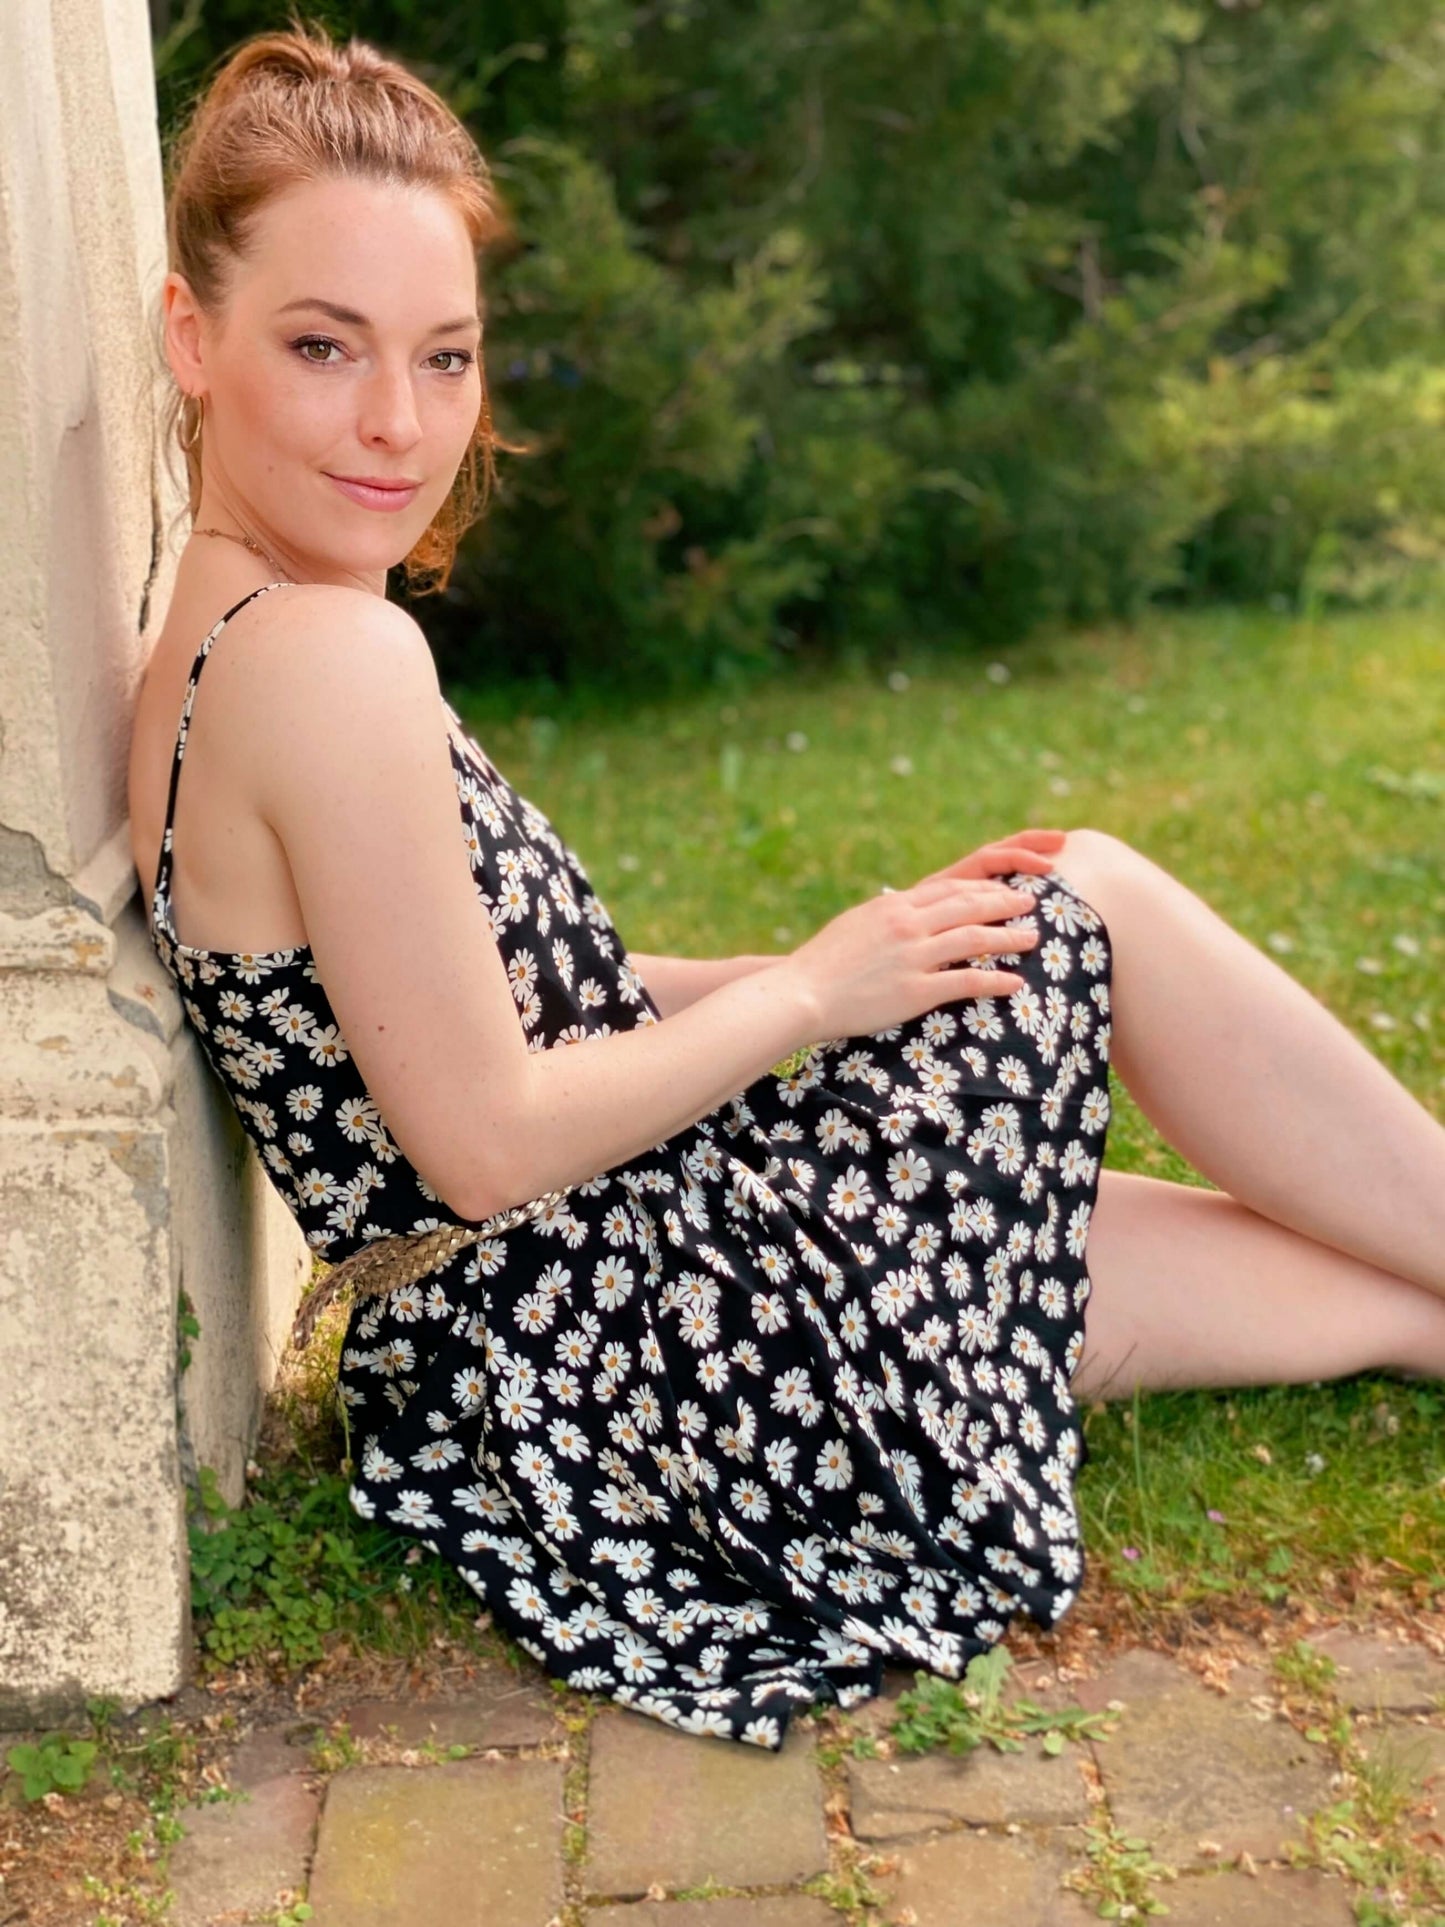 Frau, sitzt an einer Mauer gelehnt auf dem Boden. Sie trägt ein Sommerkleid mit Gänseblümchen Muster in schwarz und weiß.